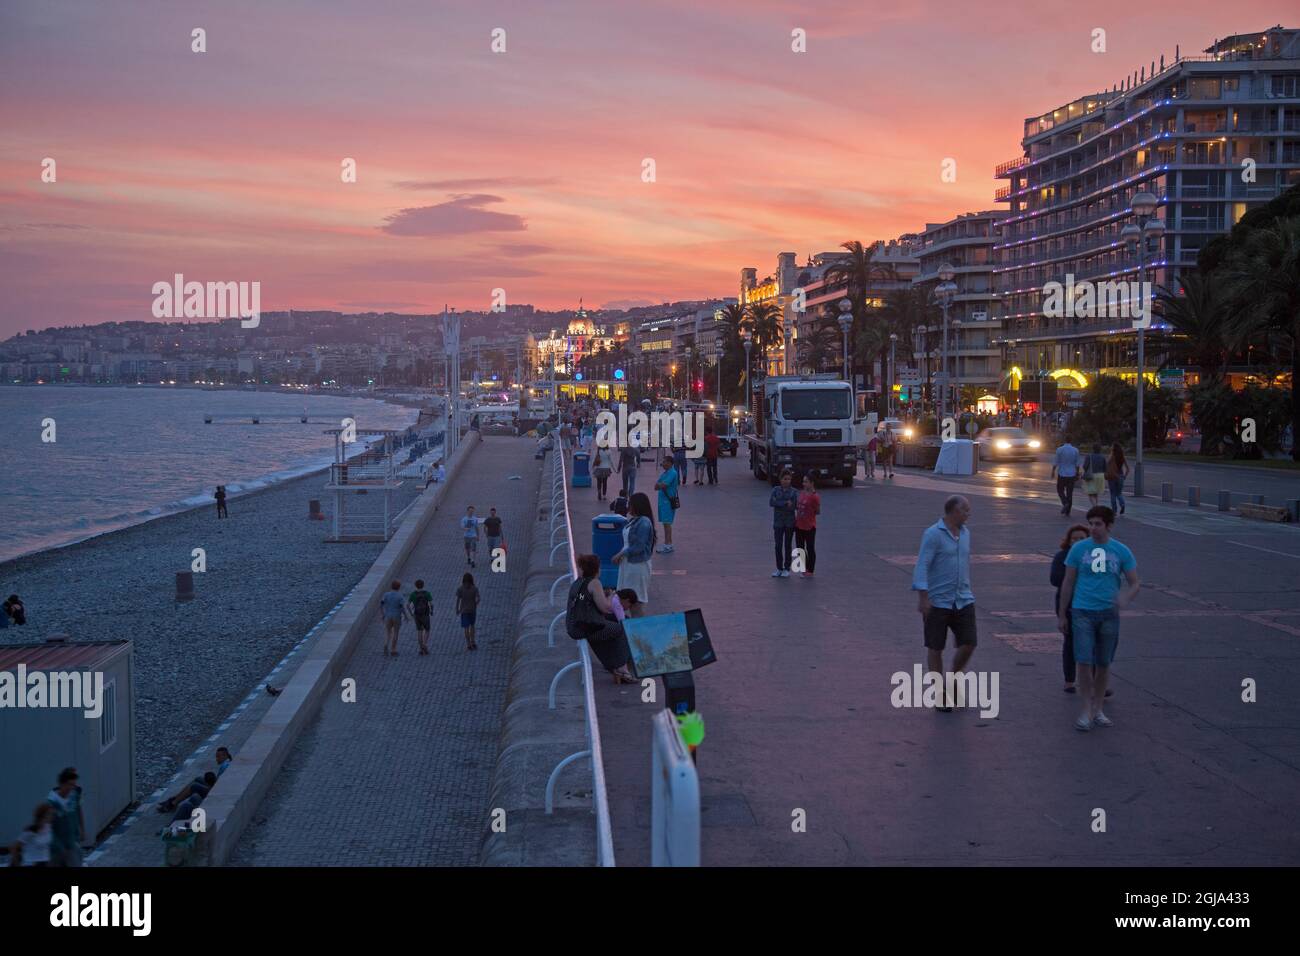 NICE 2015-10-23 vue sur la rue depuis la Promenade des Anglais dans la ville de Nice en France Foto Jeppe Gustafsson / TT / Kod 71935 Banque D'Images